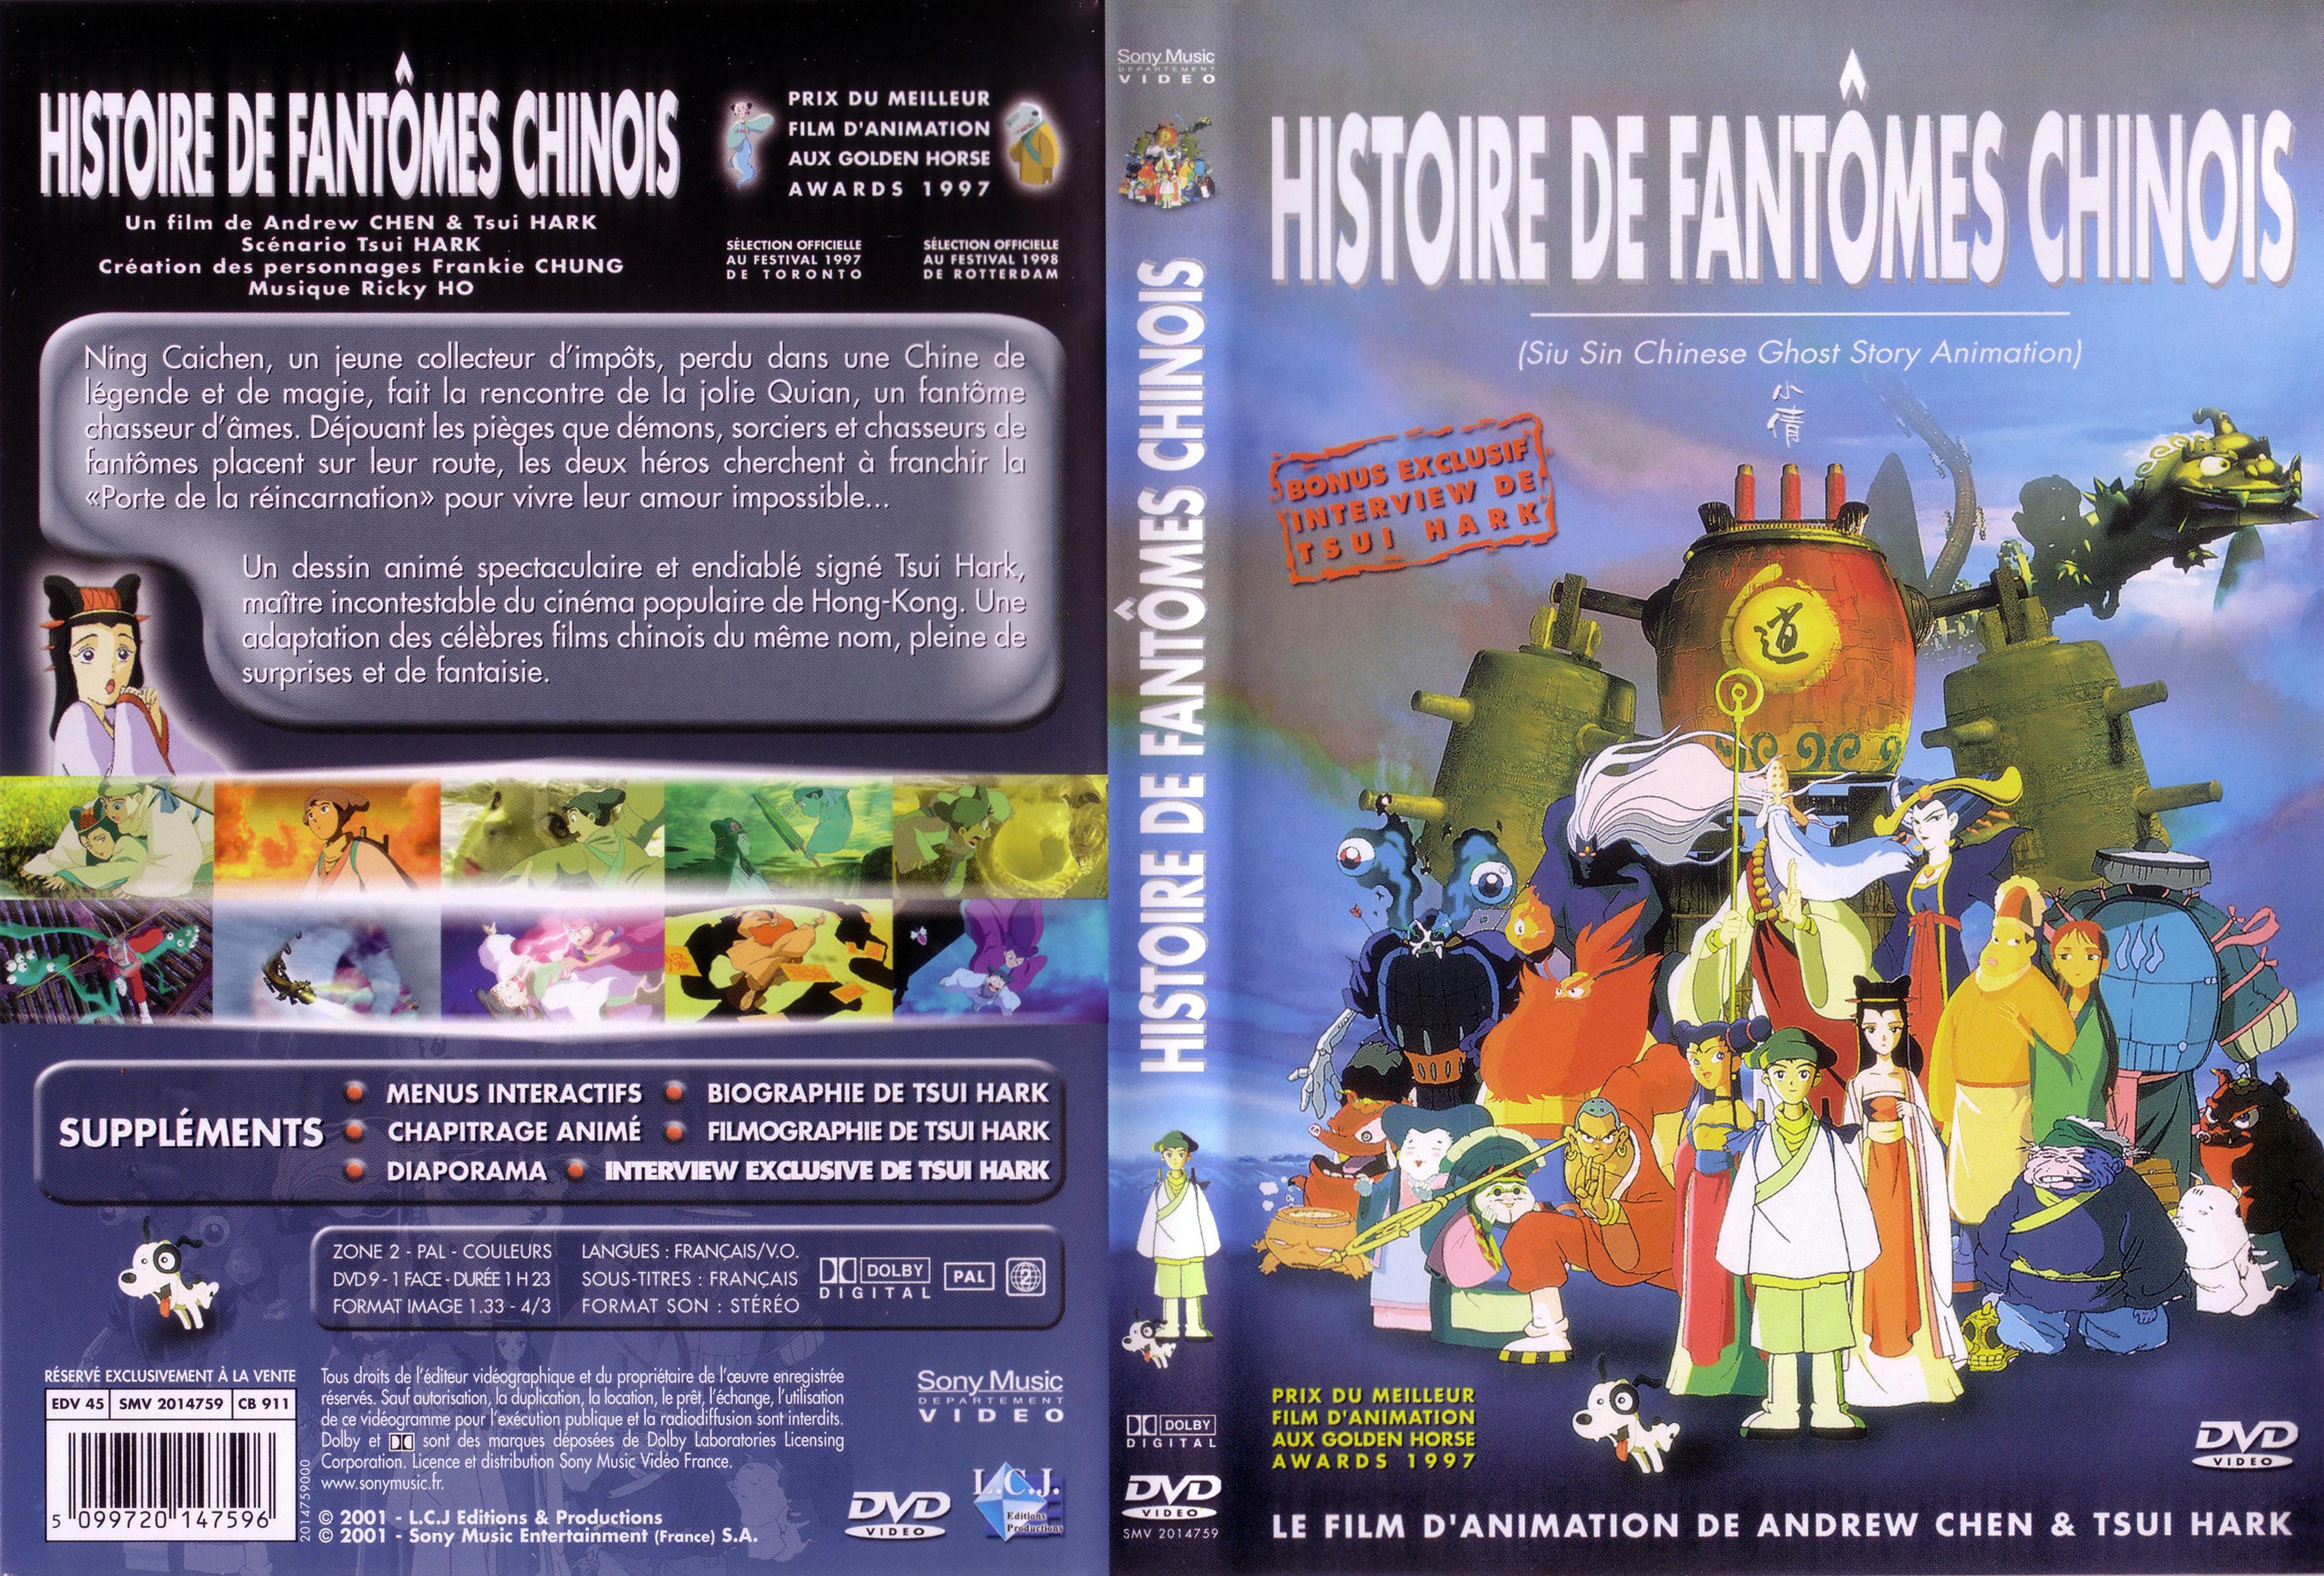 Jaquette DVD Histoire de fantomes chinois (DA)